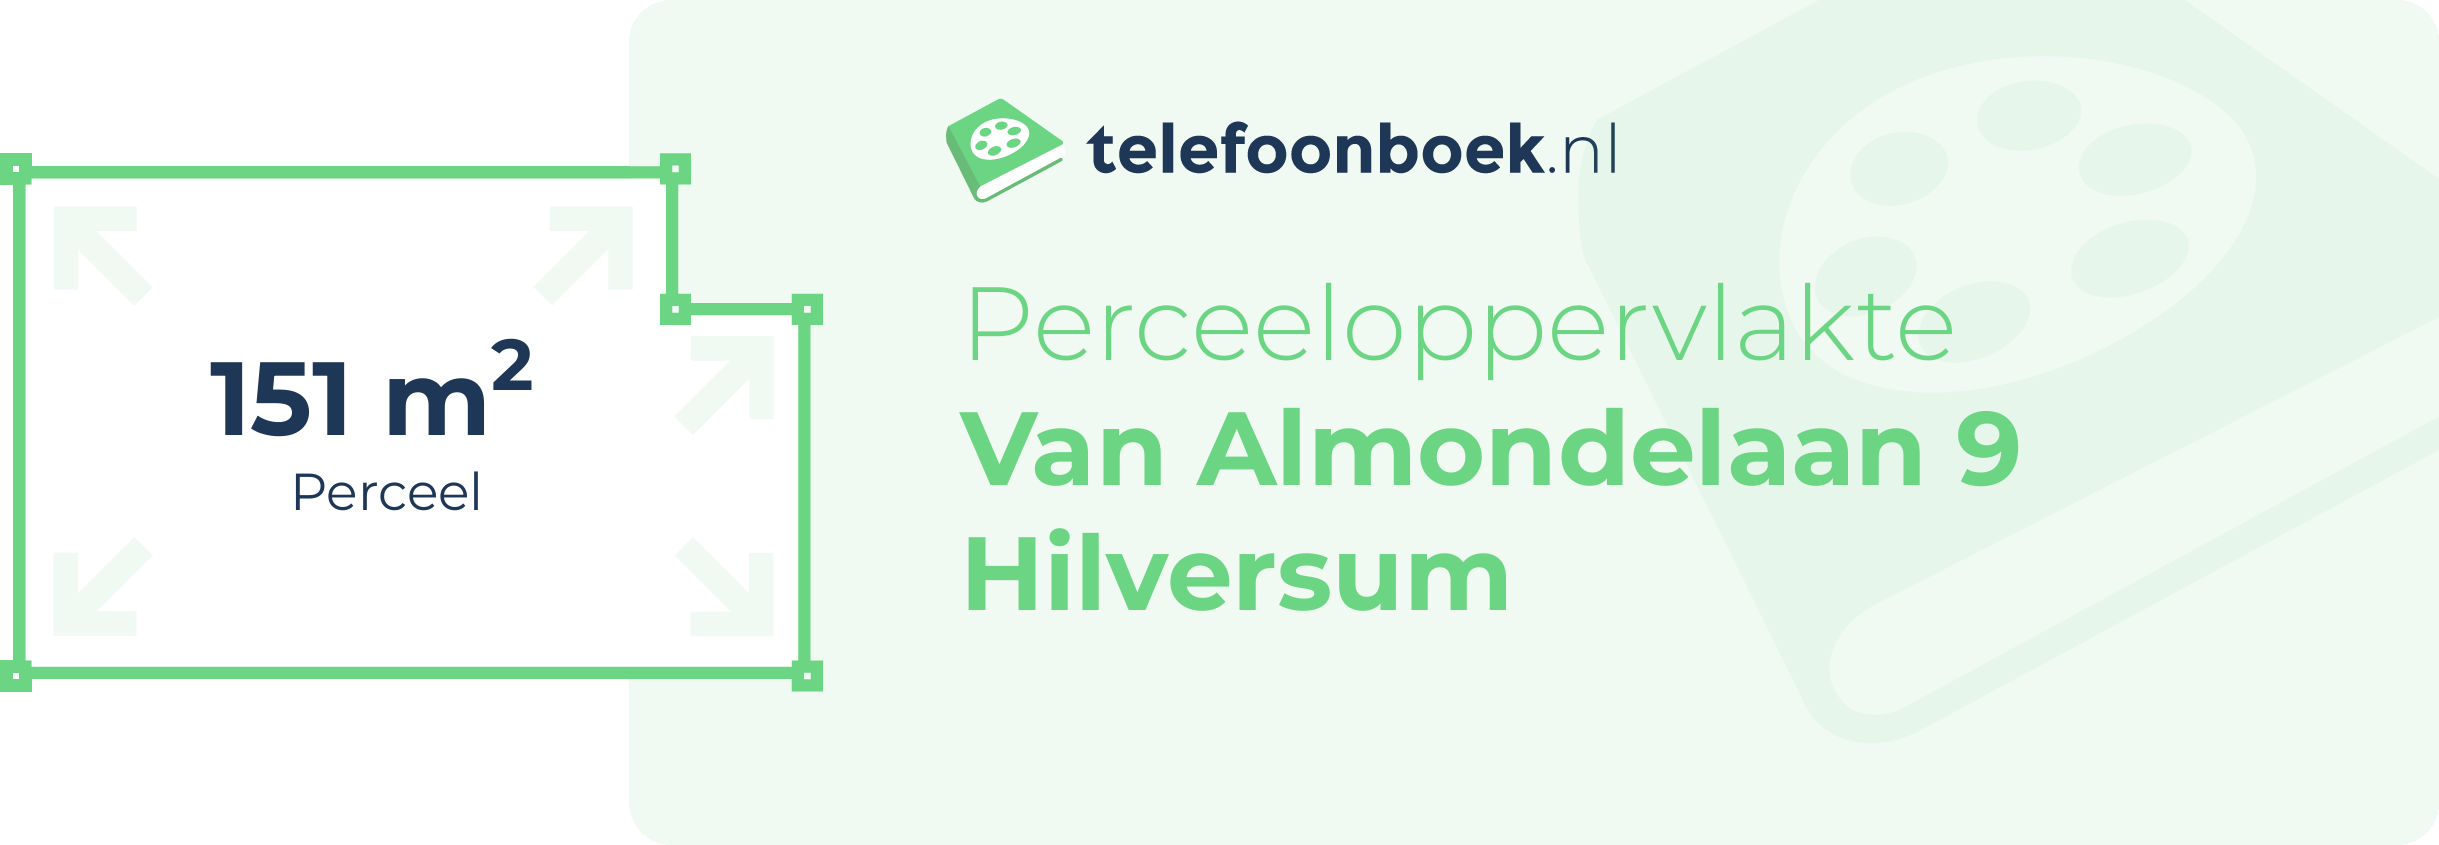 Perceeloppervlakte Van Almondelaan 9 Hilversum